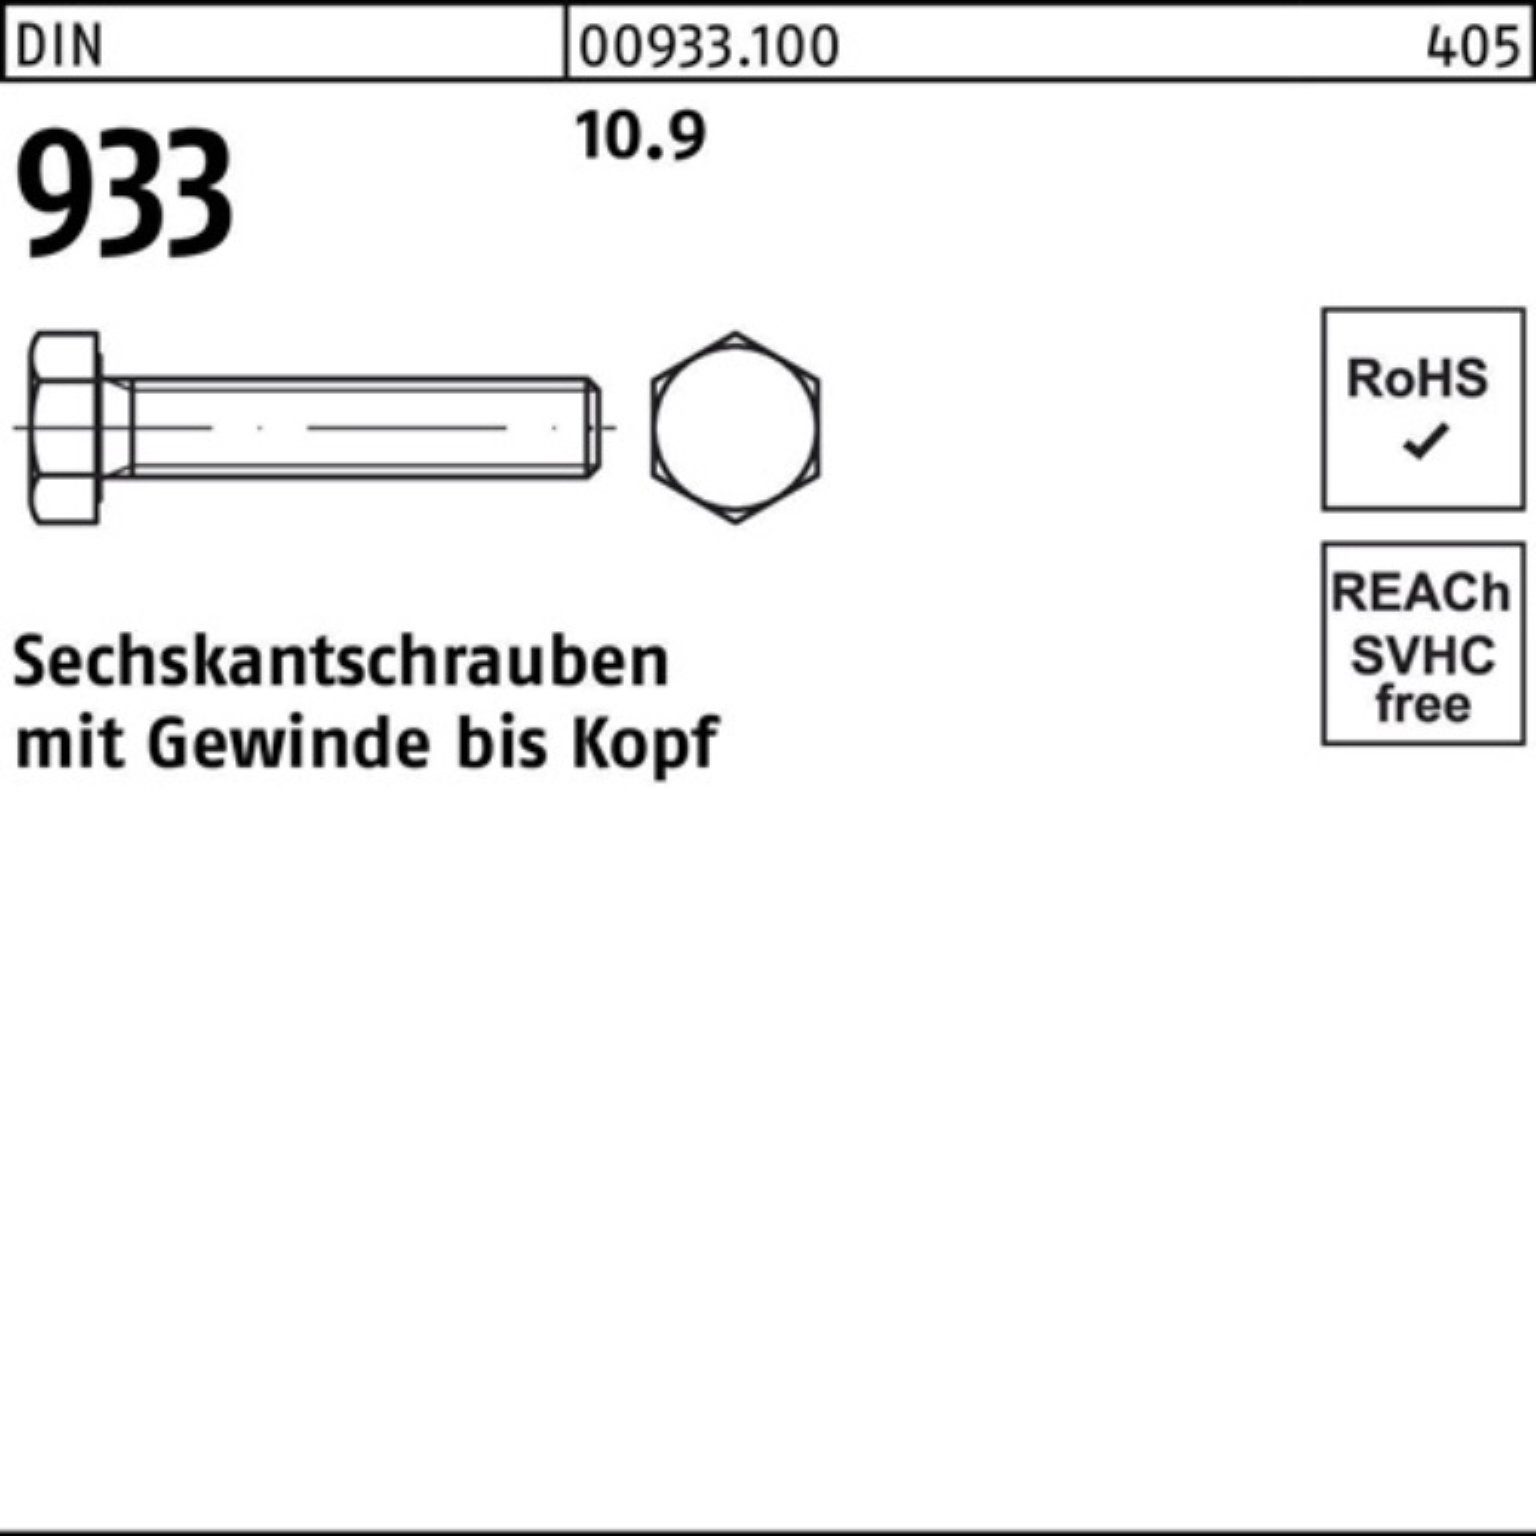 Reyher Stück 25 10.9 Sechskantschraube 933 DIN 200er Pack M8x DIN VG Sechskantschraube 933 200